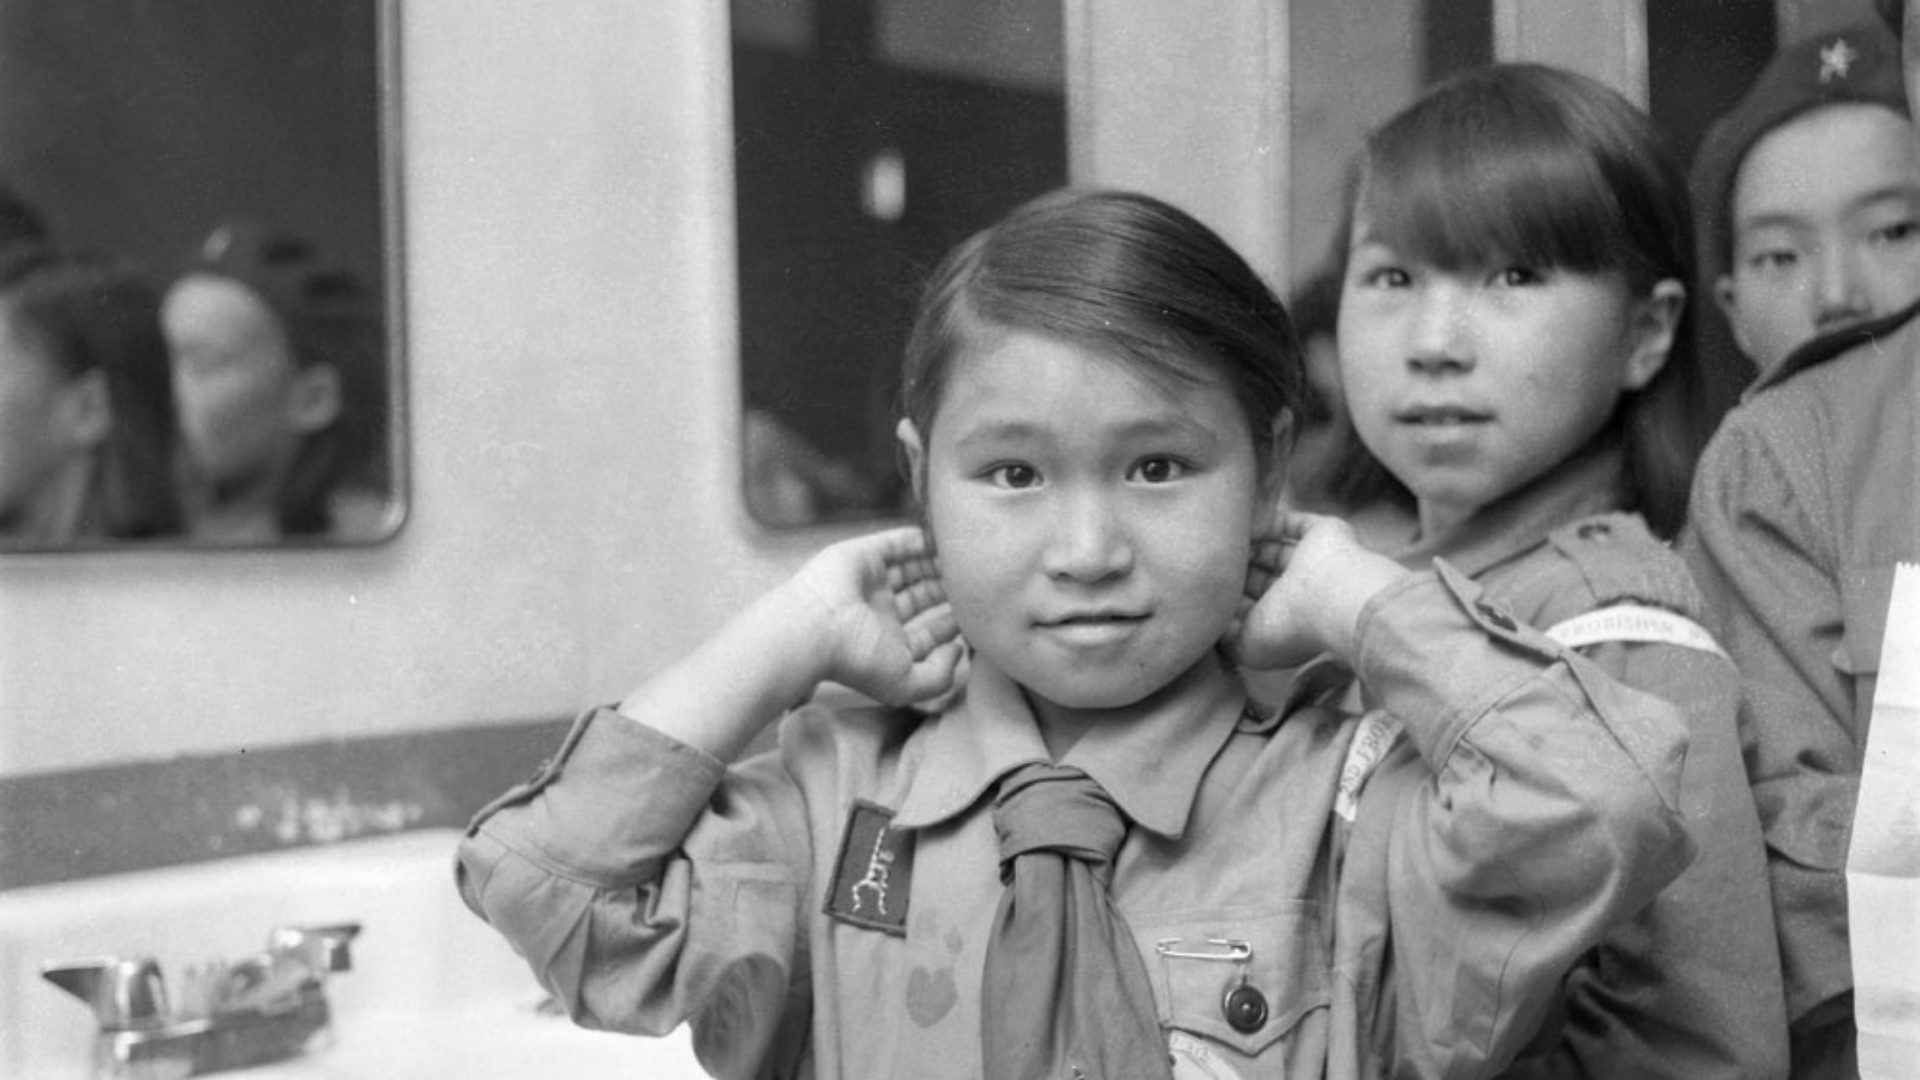 Des milliers d'enfants inuits ont subi des mauvais traitements dans les institutions canadiennes (Photo d'illustration: Biblioarchives/Flickr/CC BY-NC-ND 2.0)